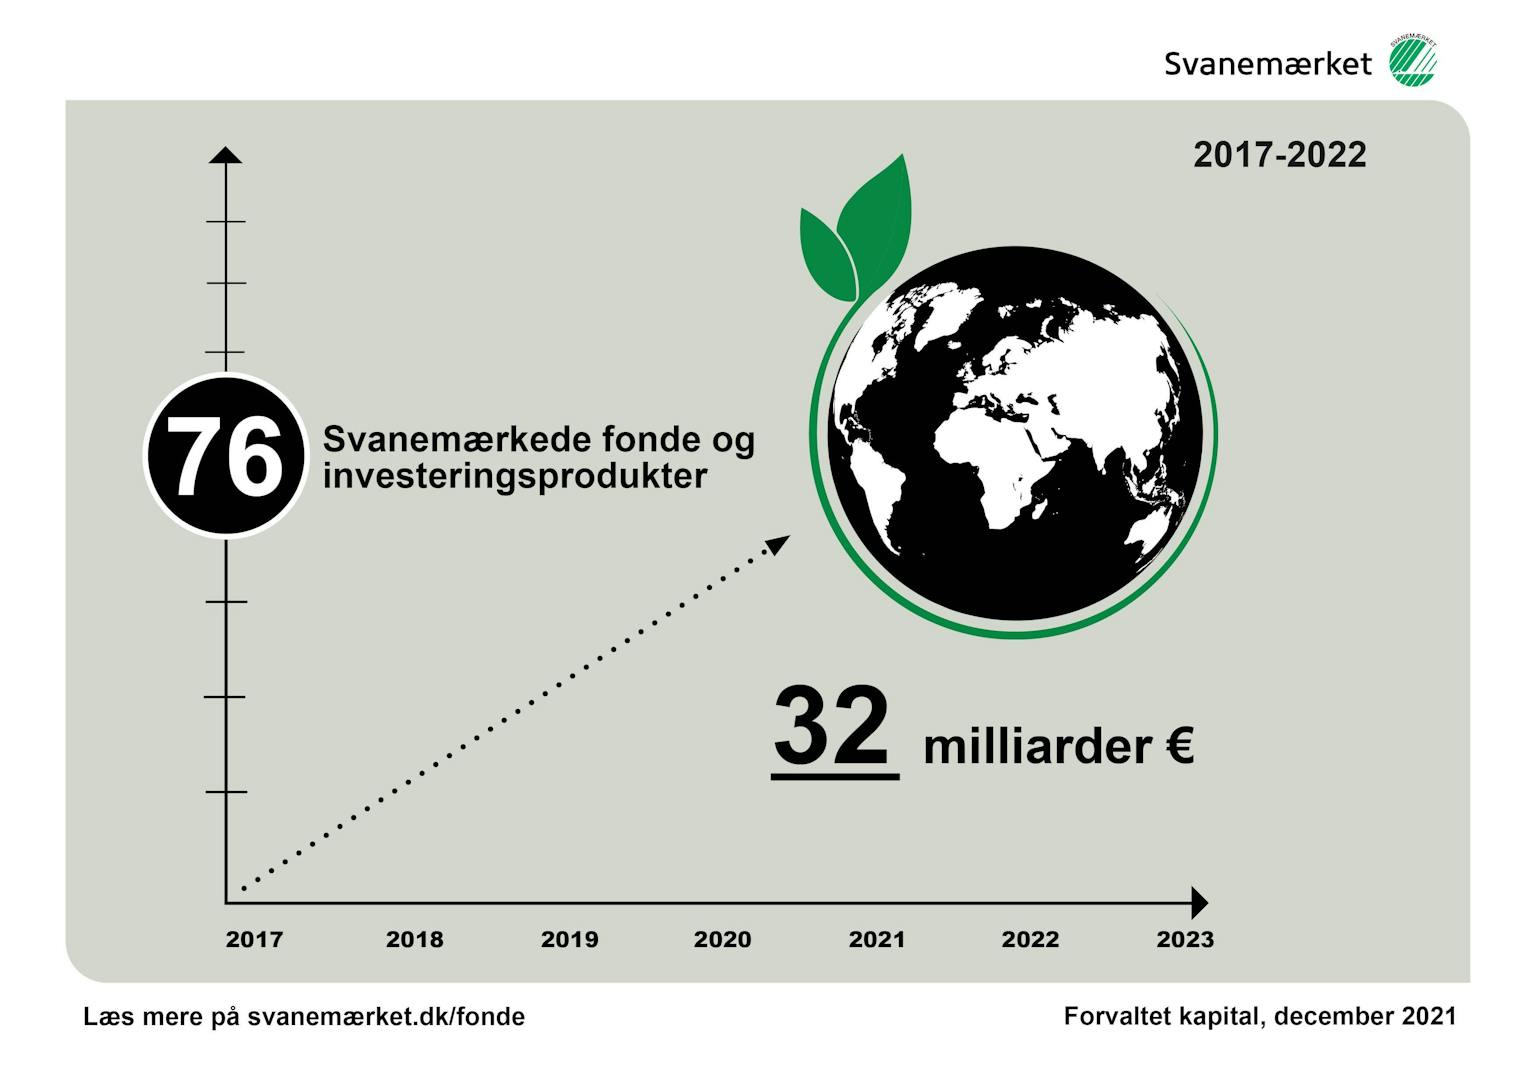 Graf der viser vækst i svanemærkede investeringsfonde 2017-2022